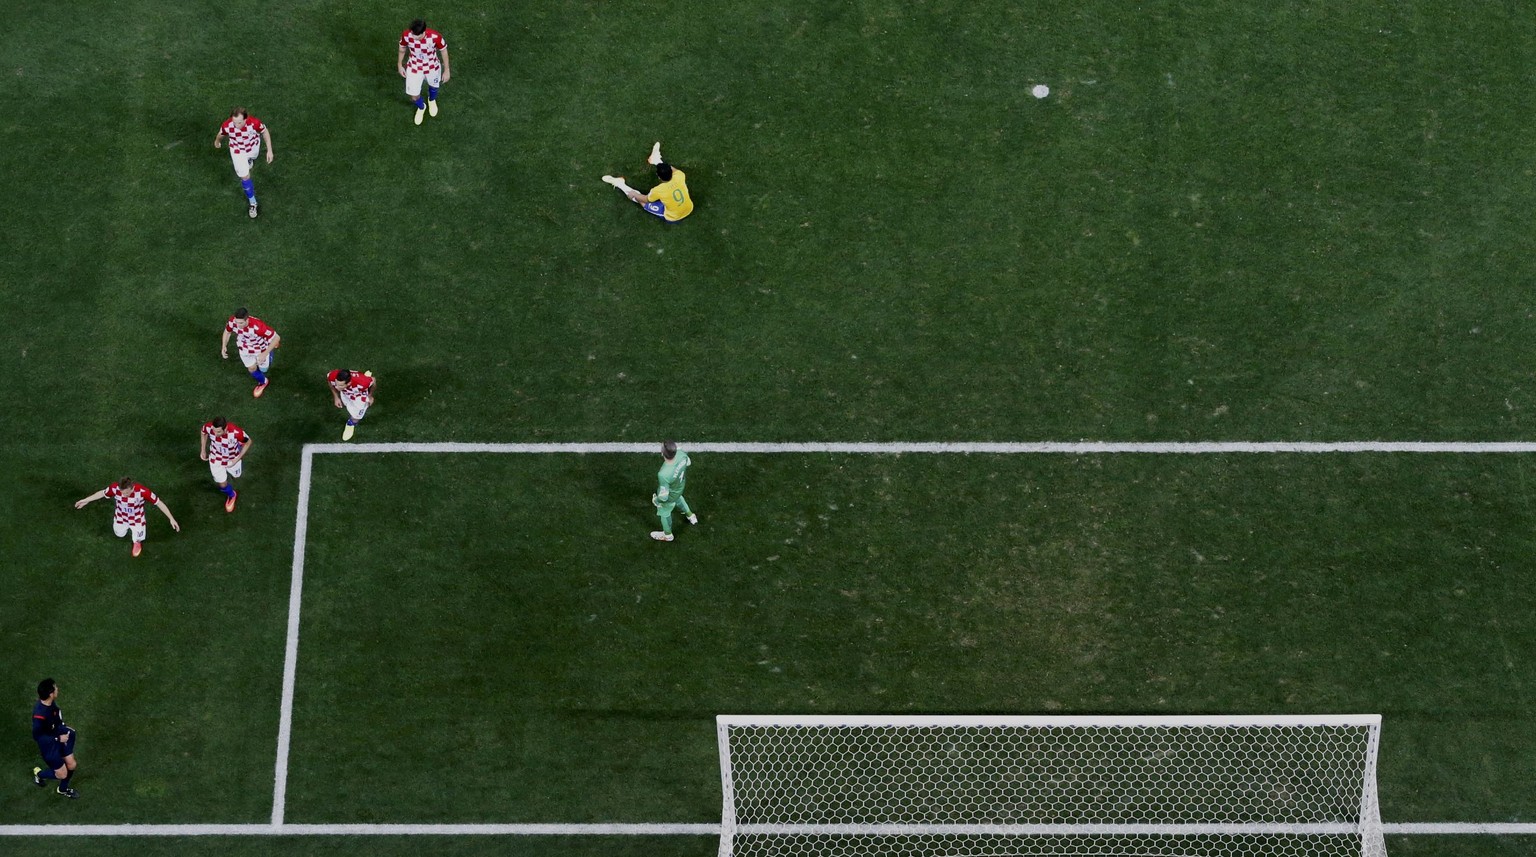 Fred am Boden, der Schiri im Fokus: Penalty für Brasilien.